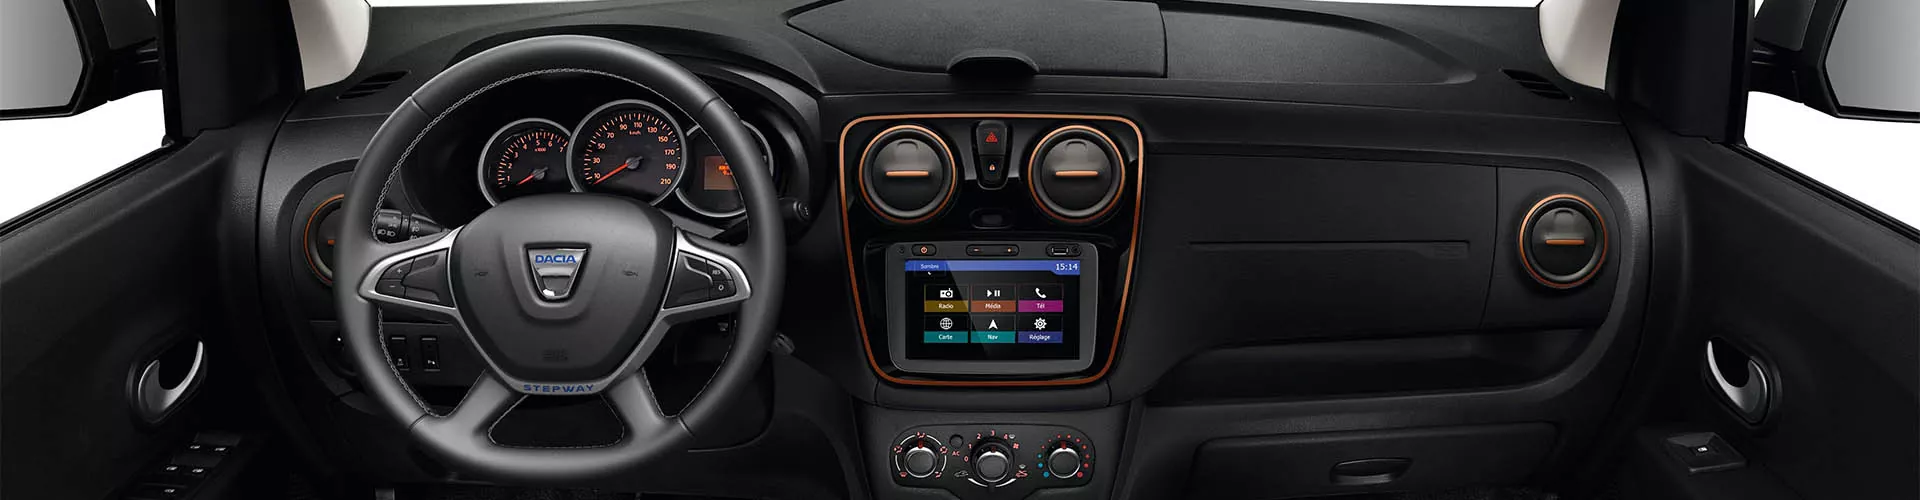 Nachrüsten von CarPlay & Android Auto am Dacia Logan